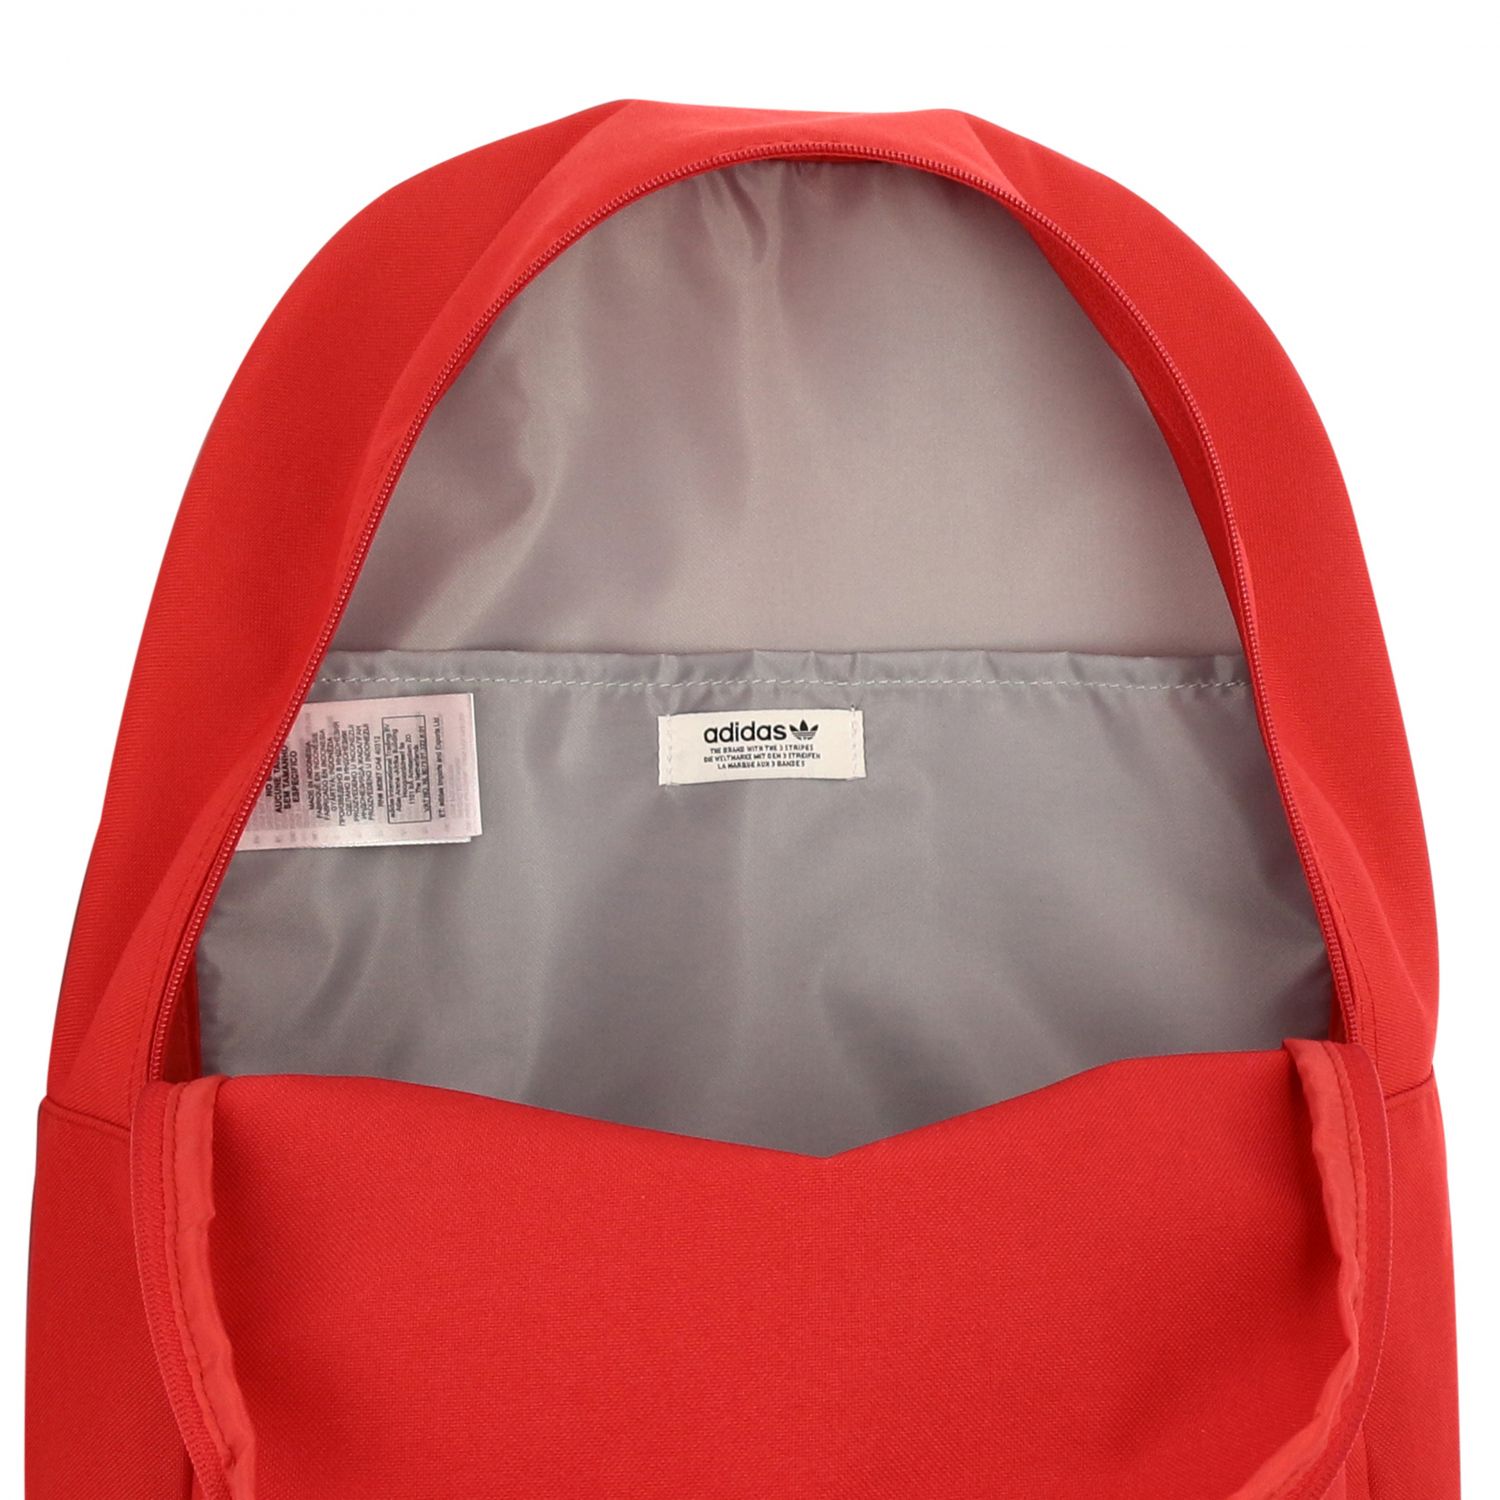 pharrell backpack